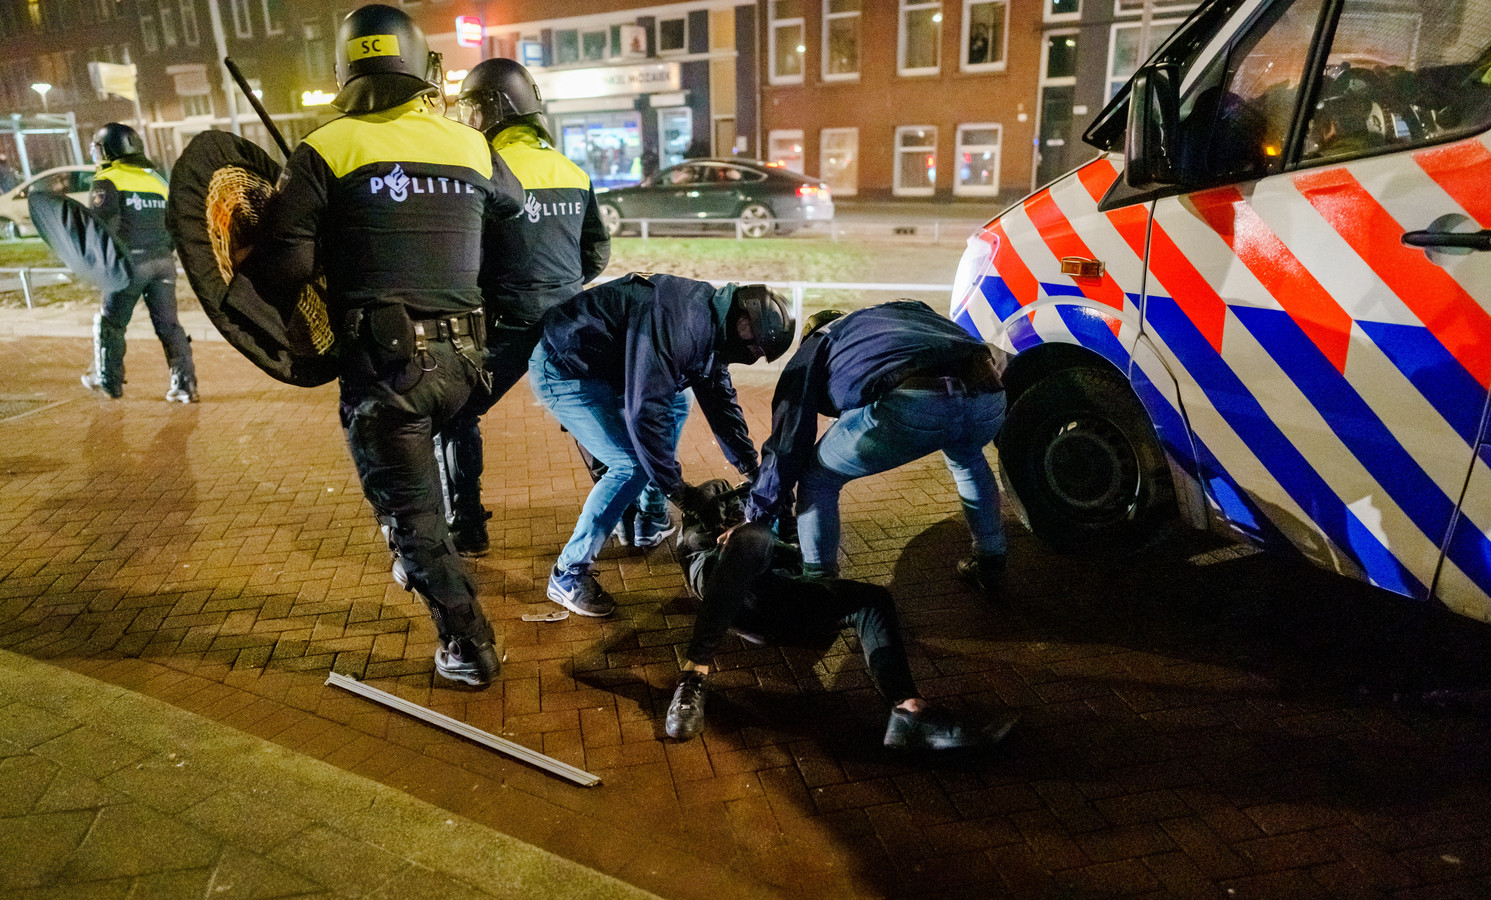 De mobiele eenheid is in Rotterdam aanwezig en heeft charges uitgevoerd om de straat leeg te vegen tijdens de avondklokrellen.